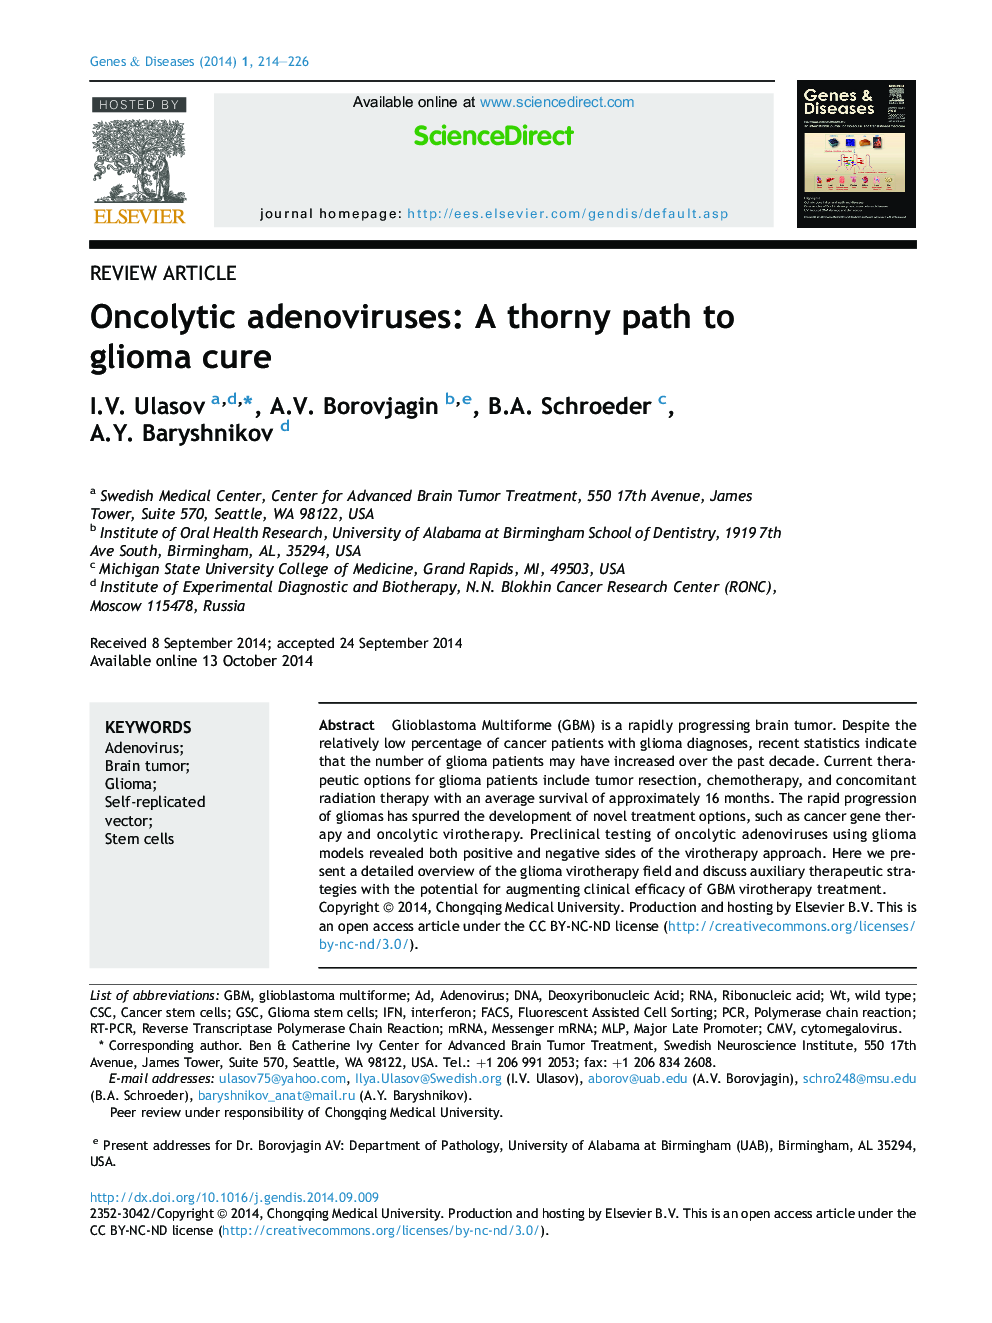 آدنوویروسهای آنکولیتیک: یک مسیر تلخ برای درمان گلیوما 